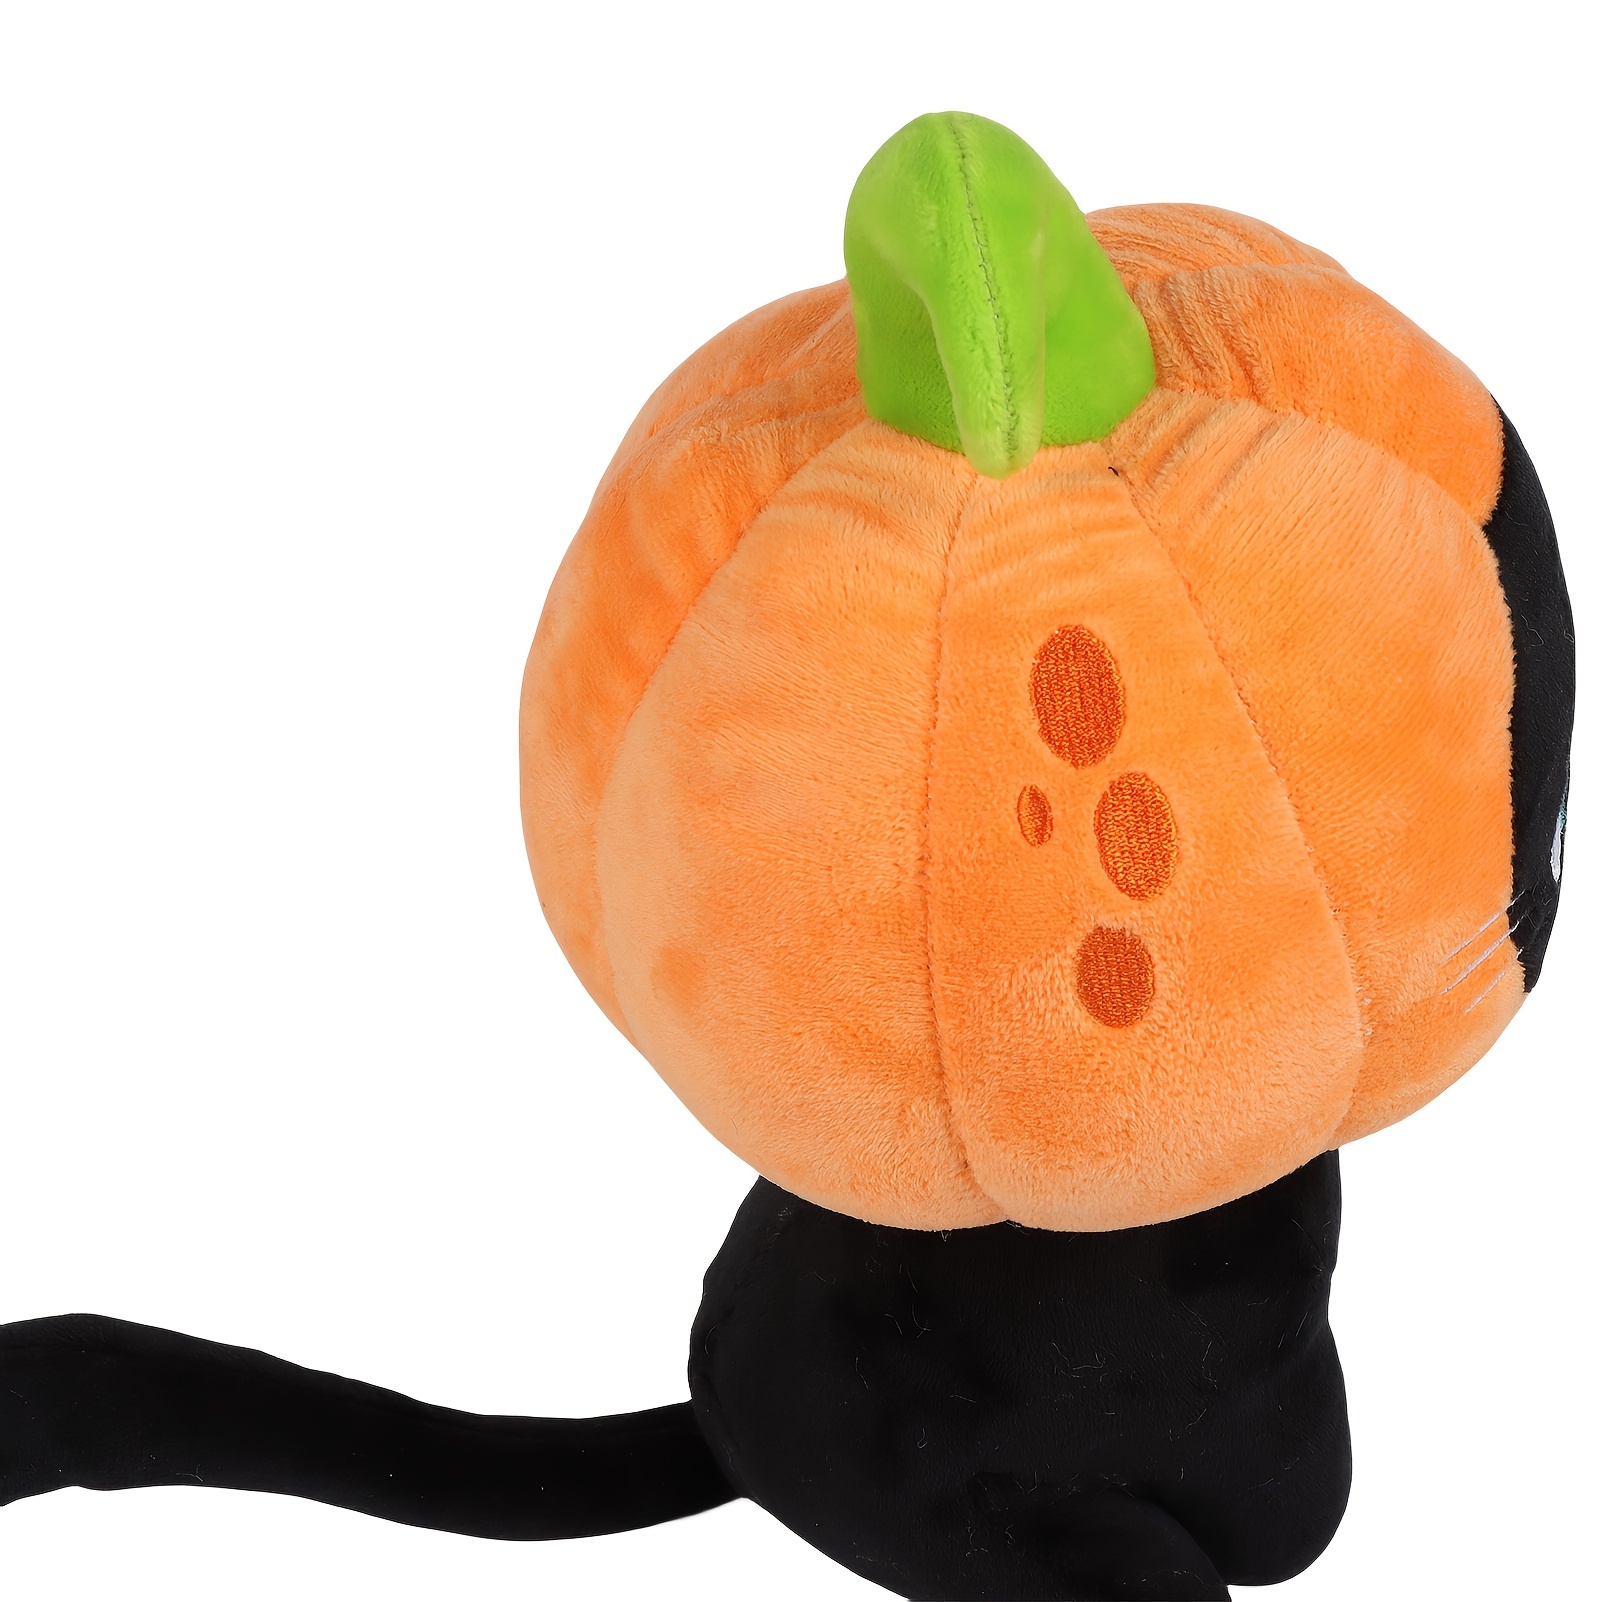 Pumpkin Kitty Halloween Stuffed Animal